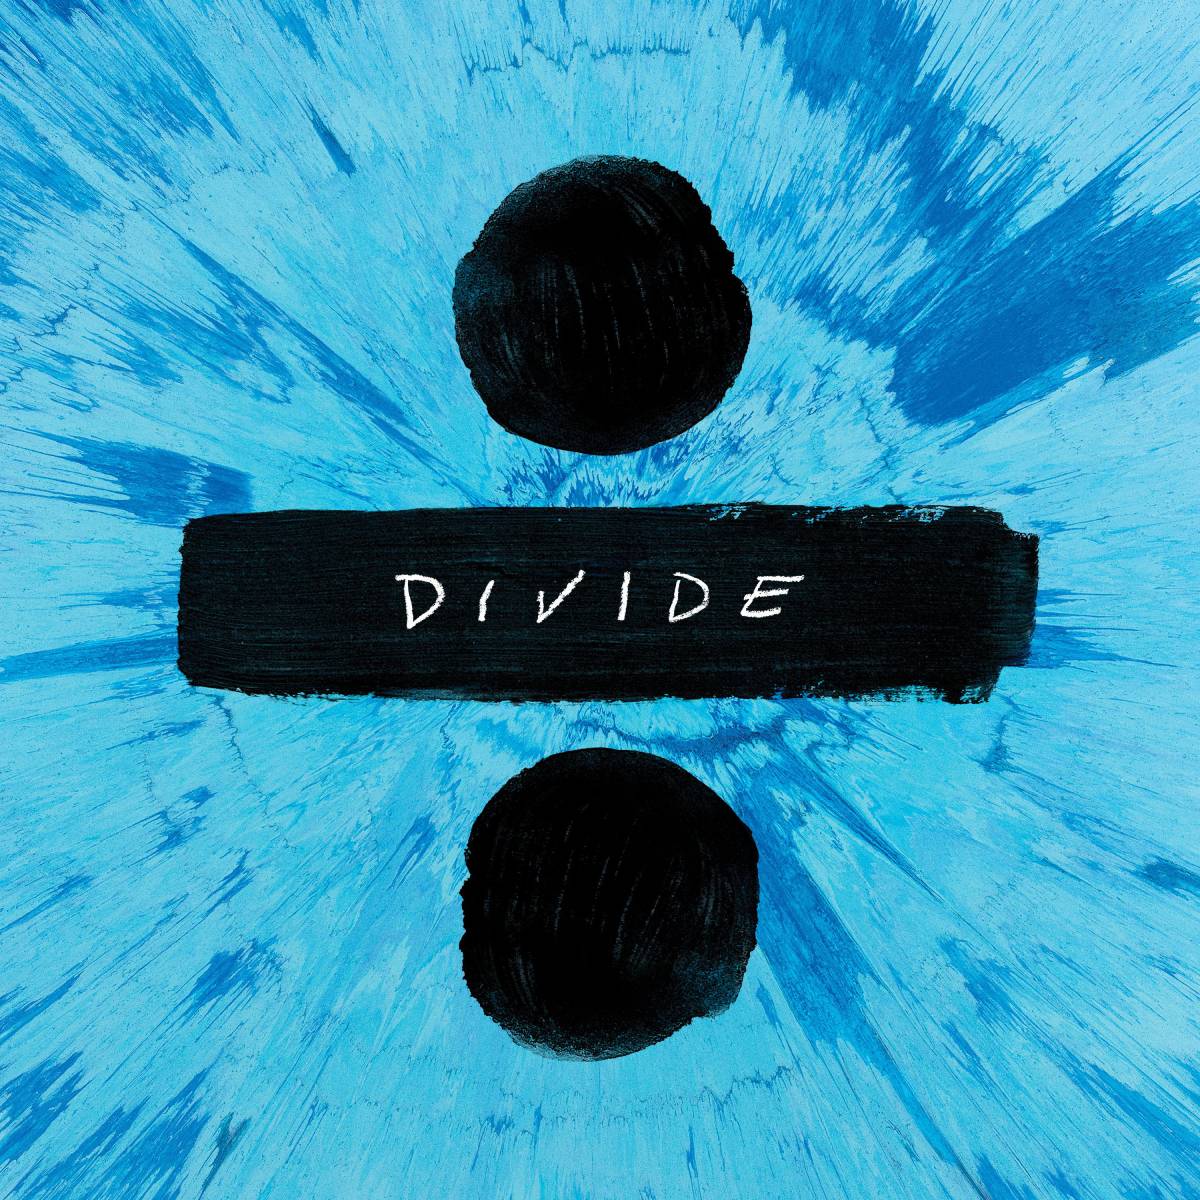 Divide (Ed Sheeran's third album)